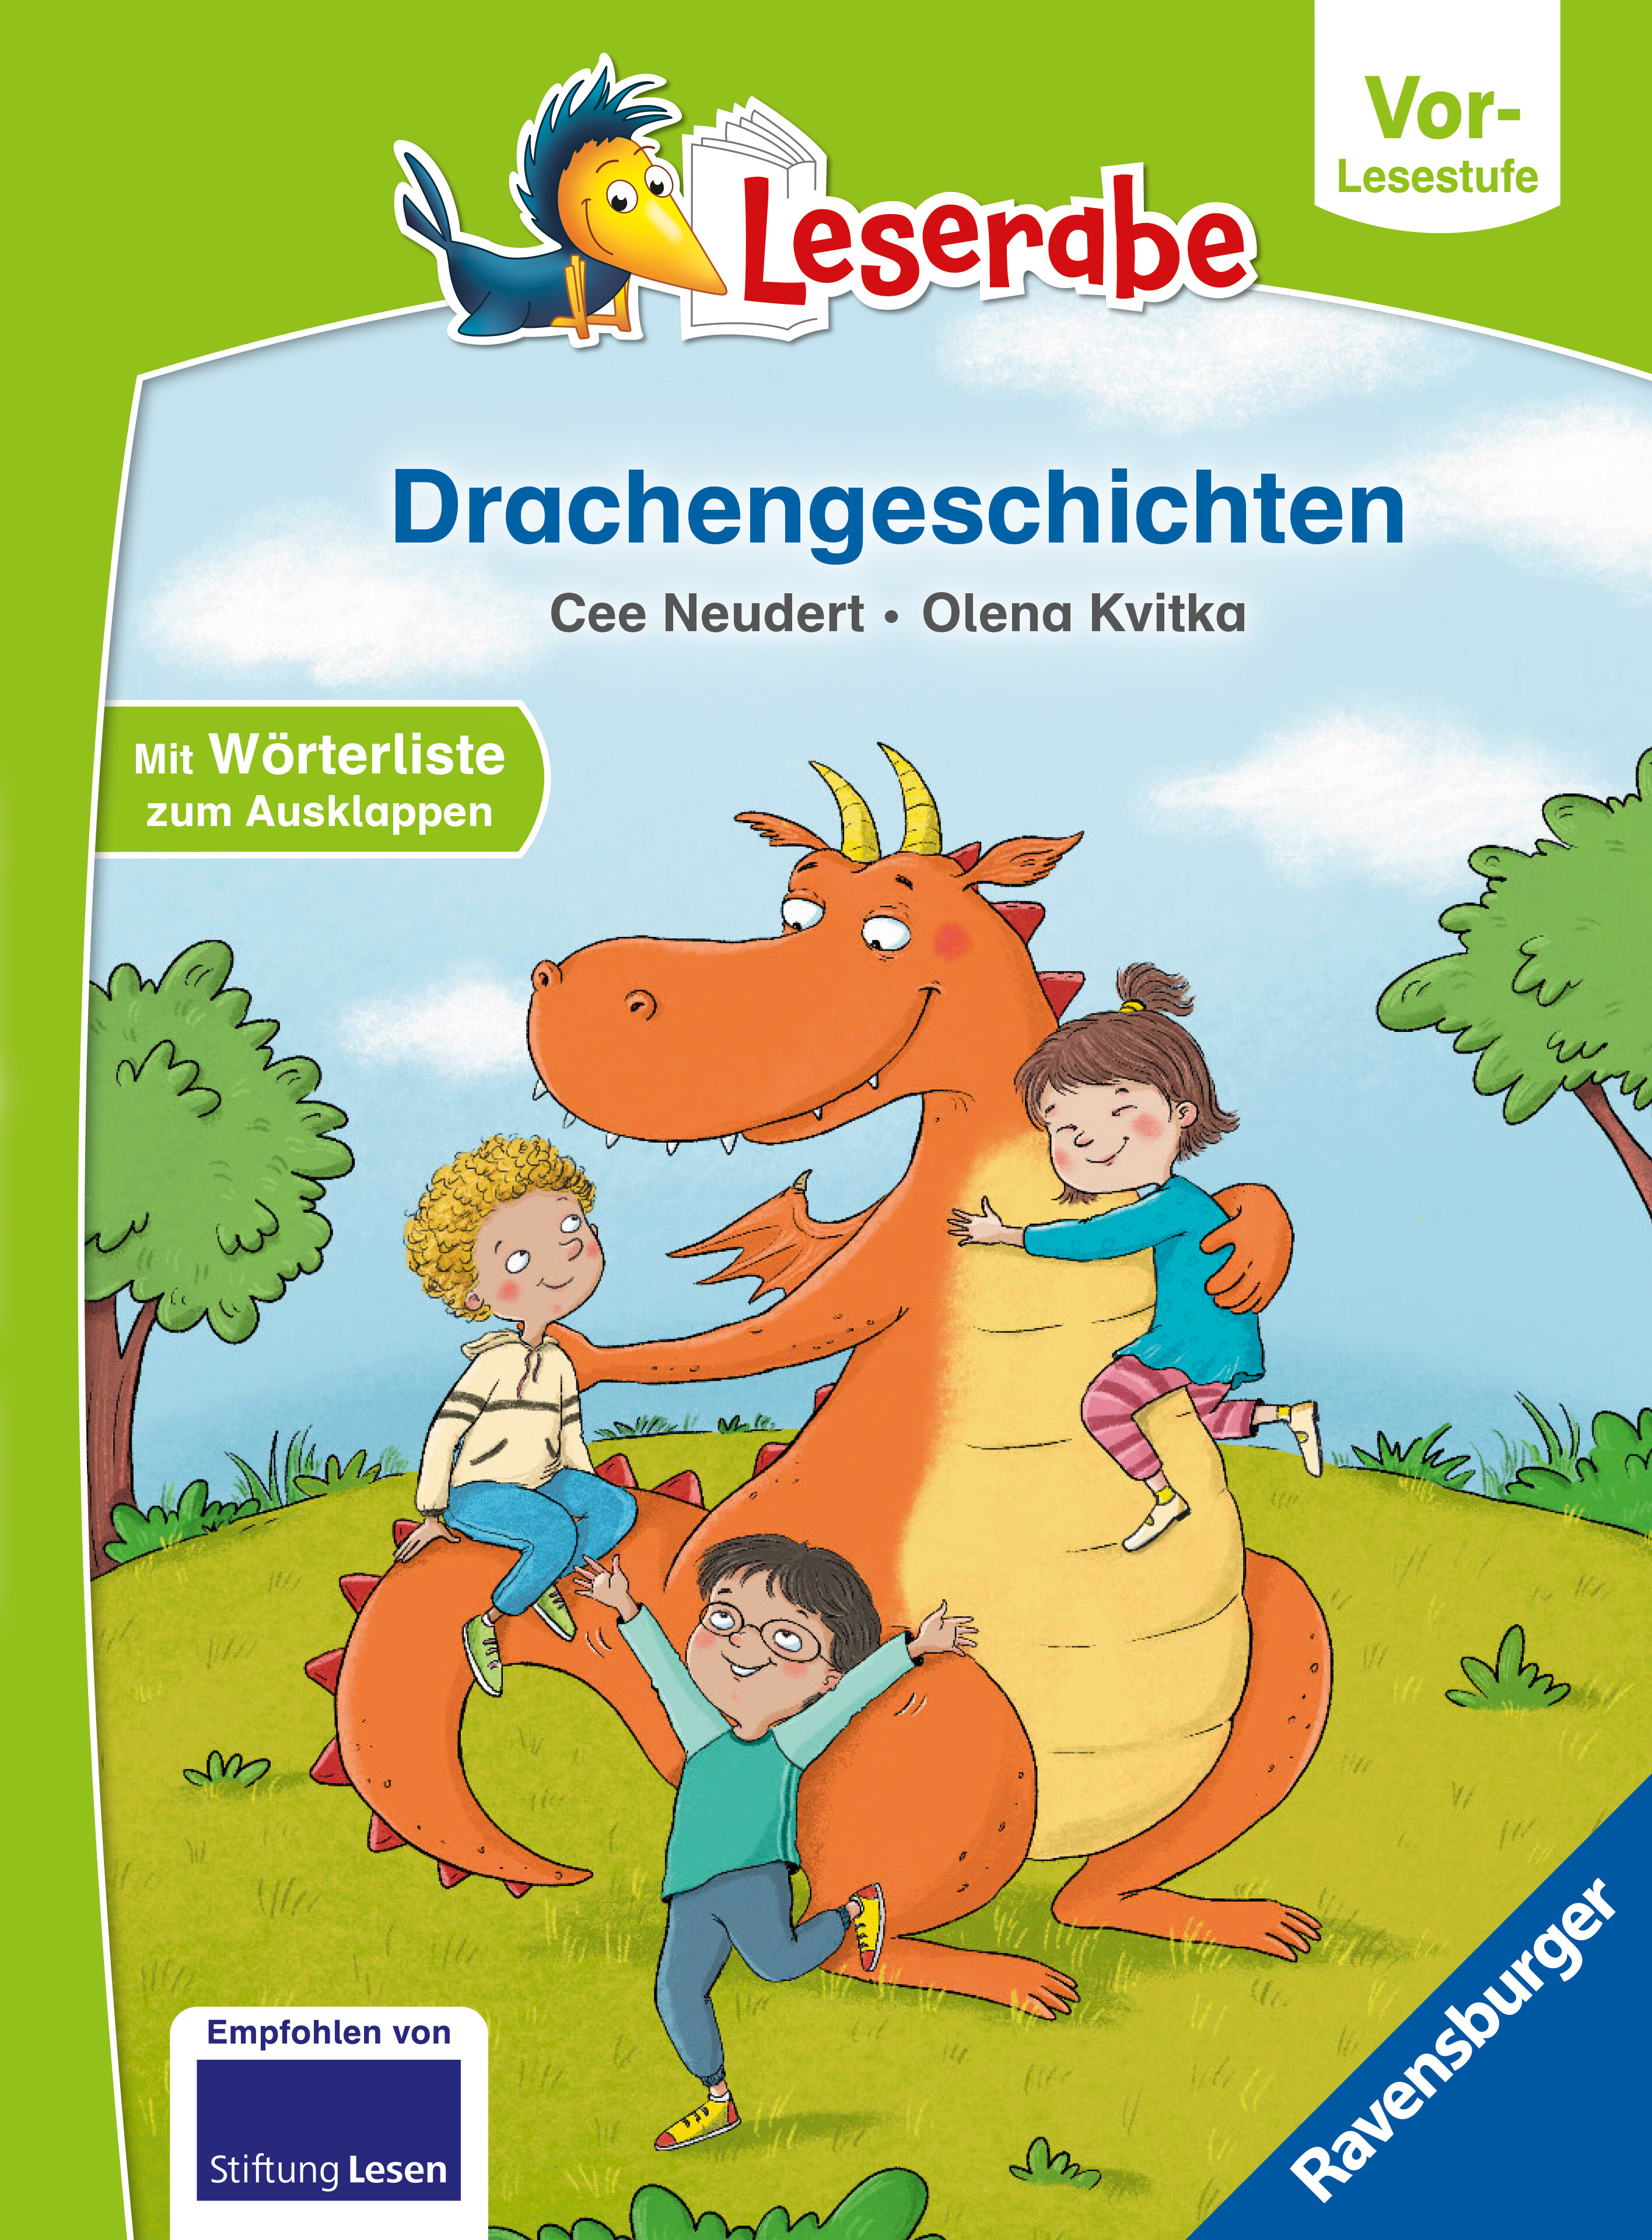 Buchcover "Drachengeschichten", Ravensburger 